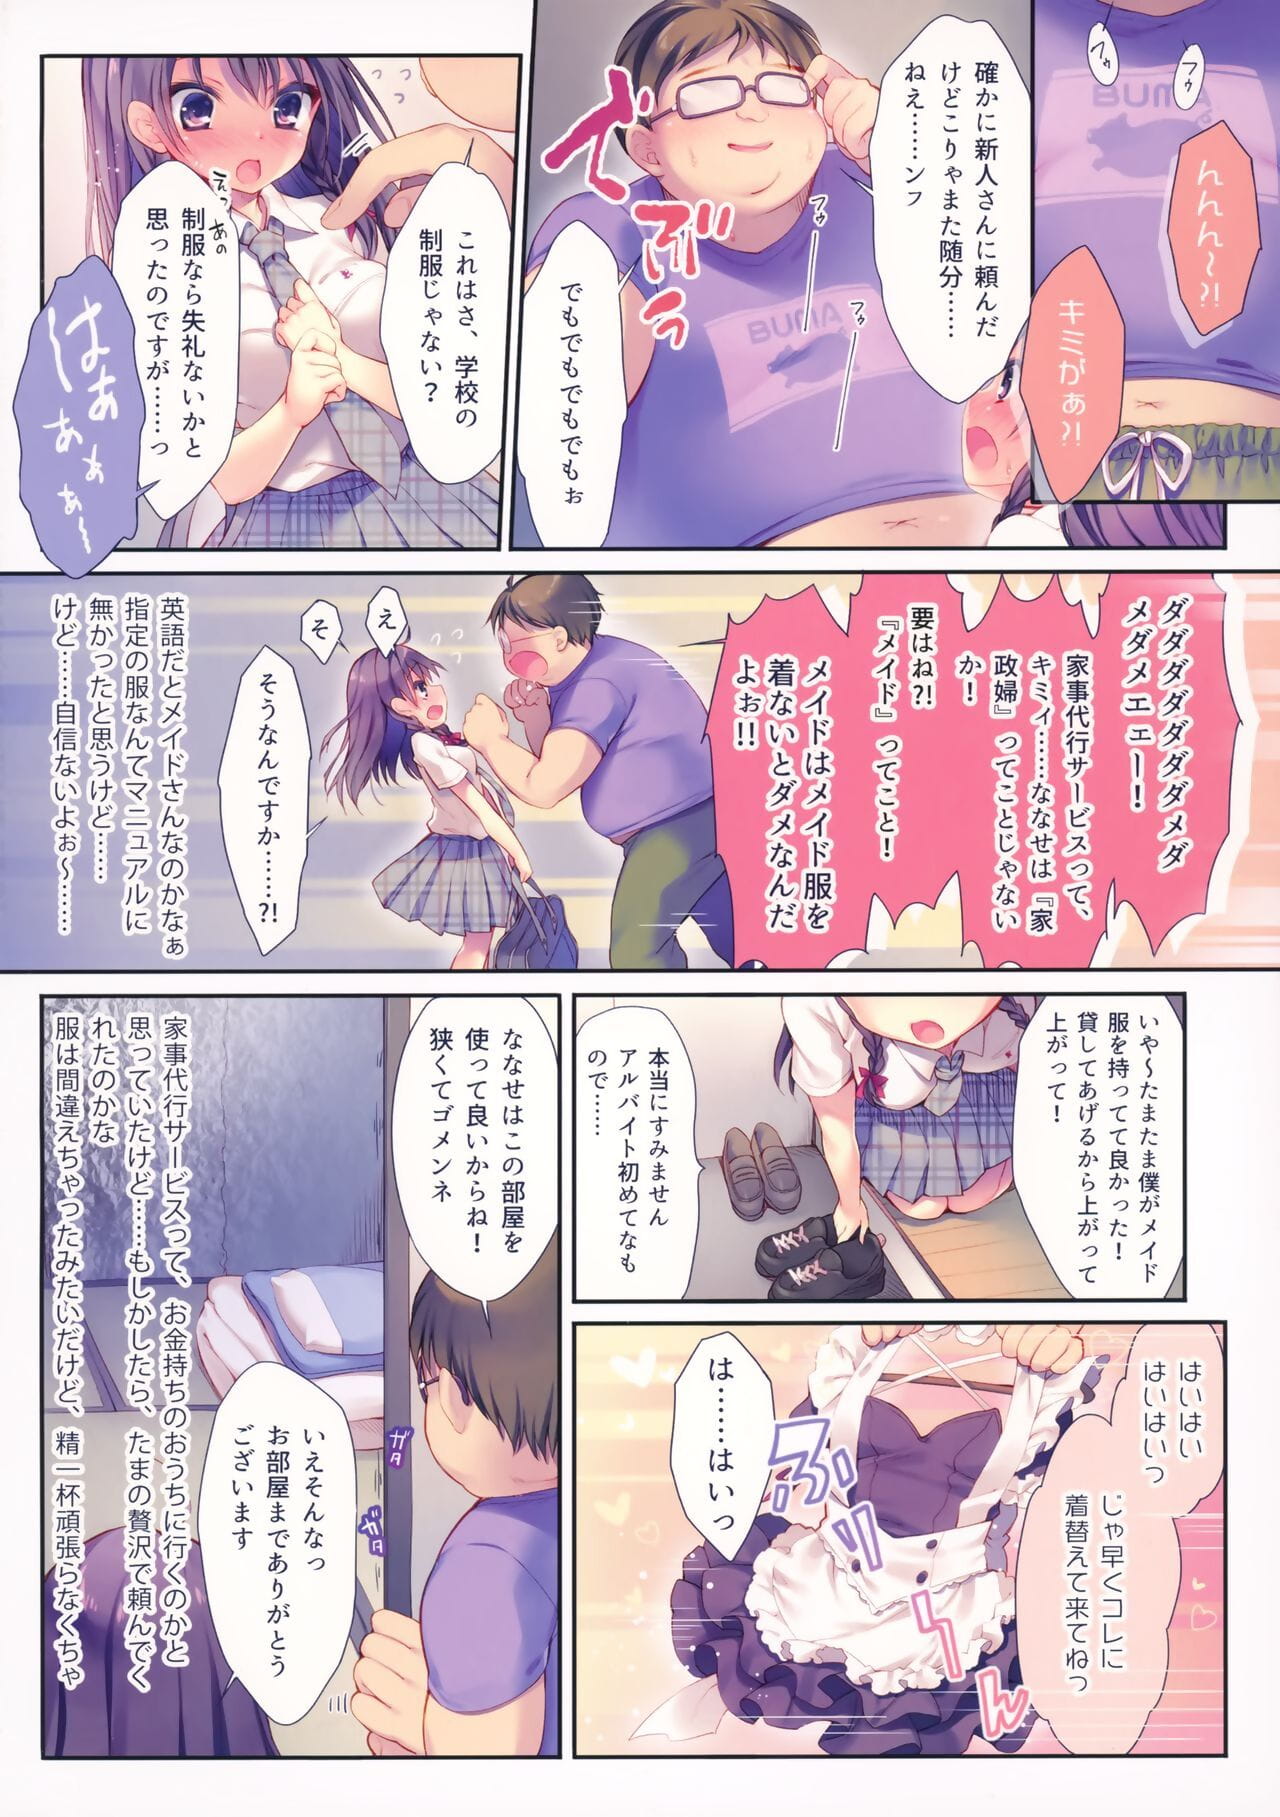 Kore ga Kaseifu Nandesuka?! page 1